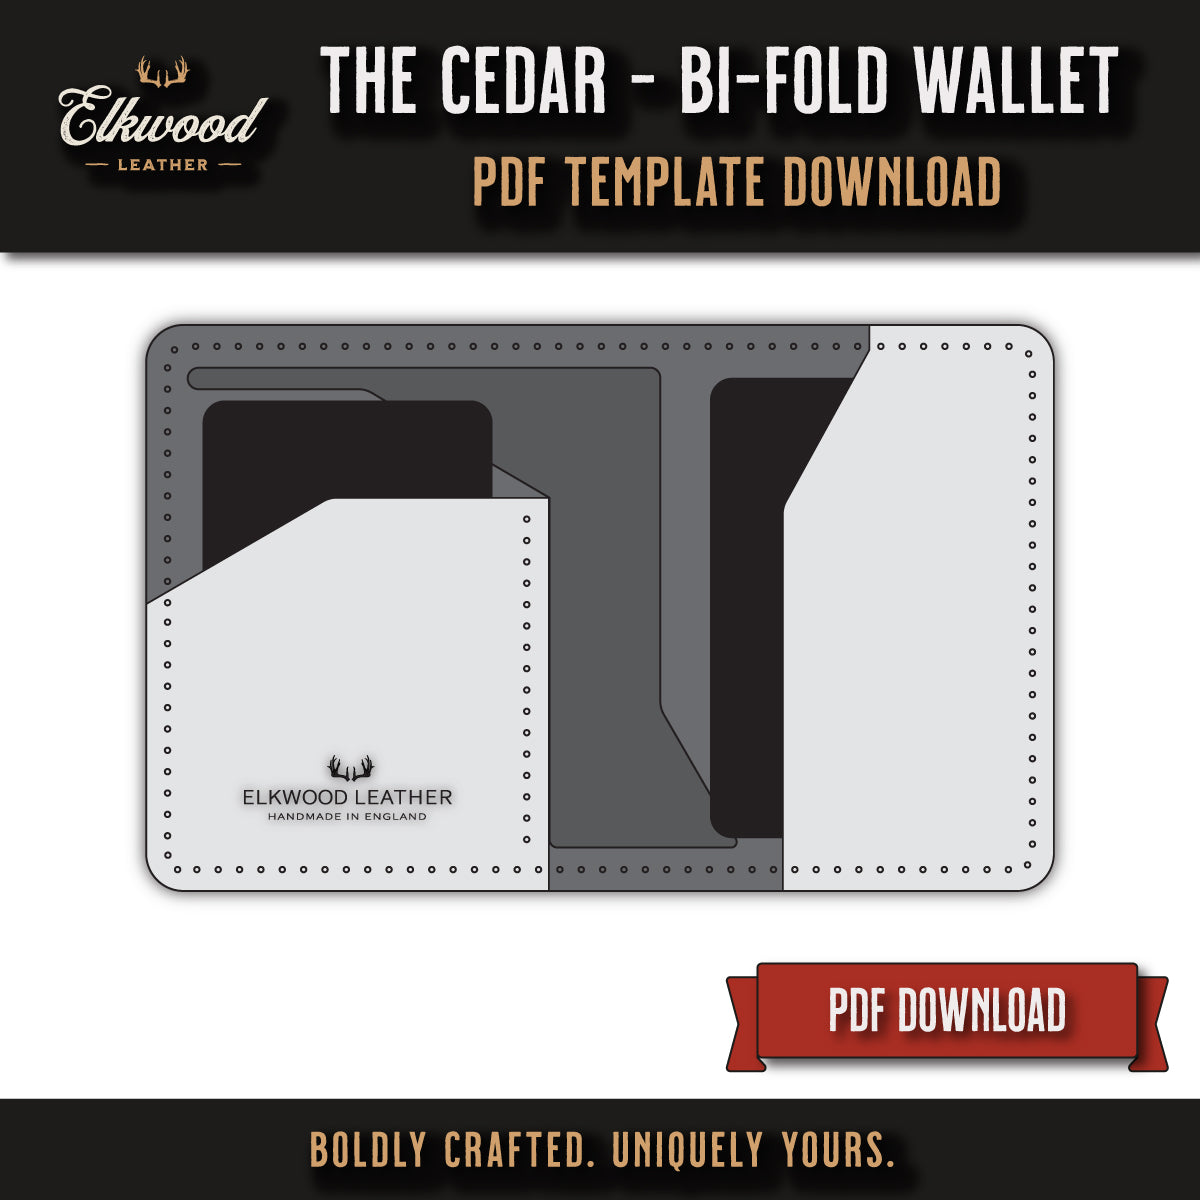 Elkwood Leather - The Cedar Cardholder wallet digital download pdf template